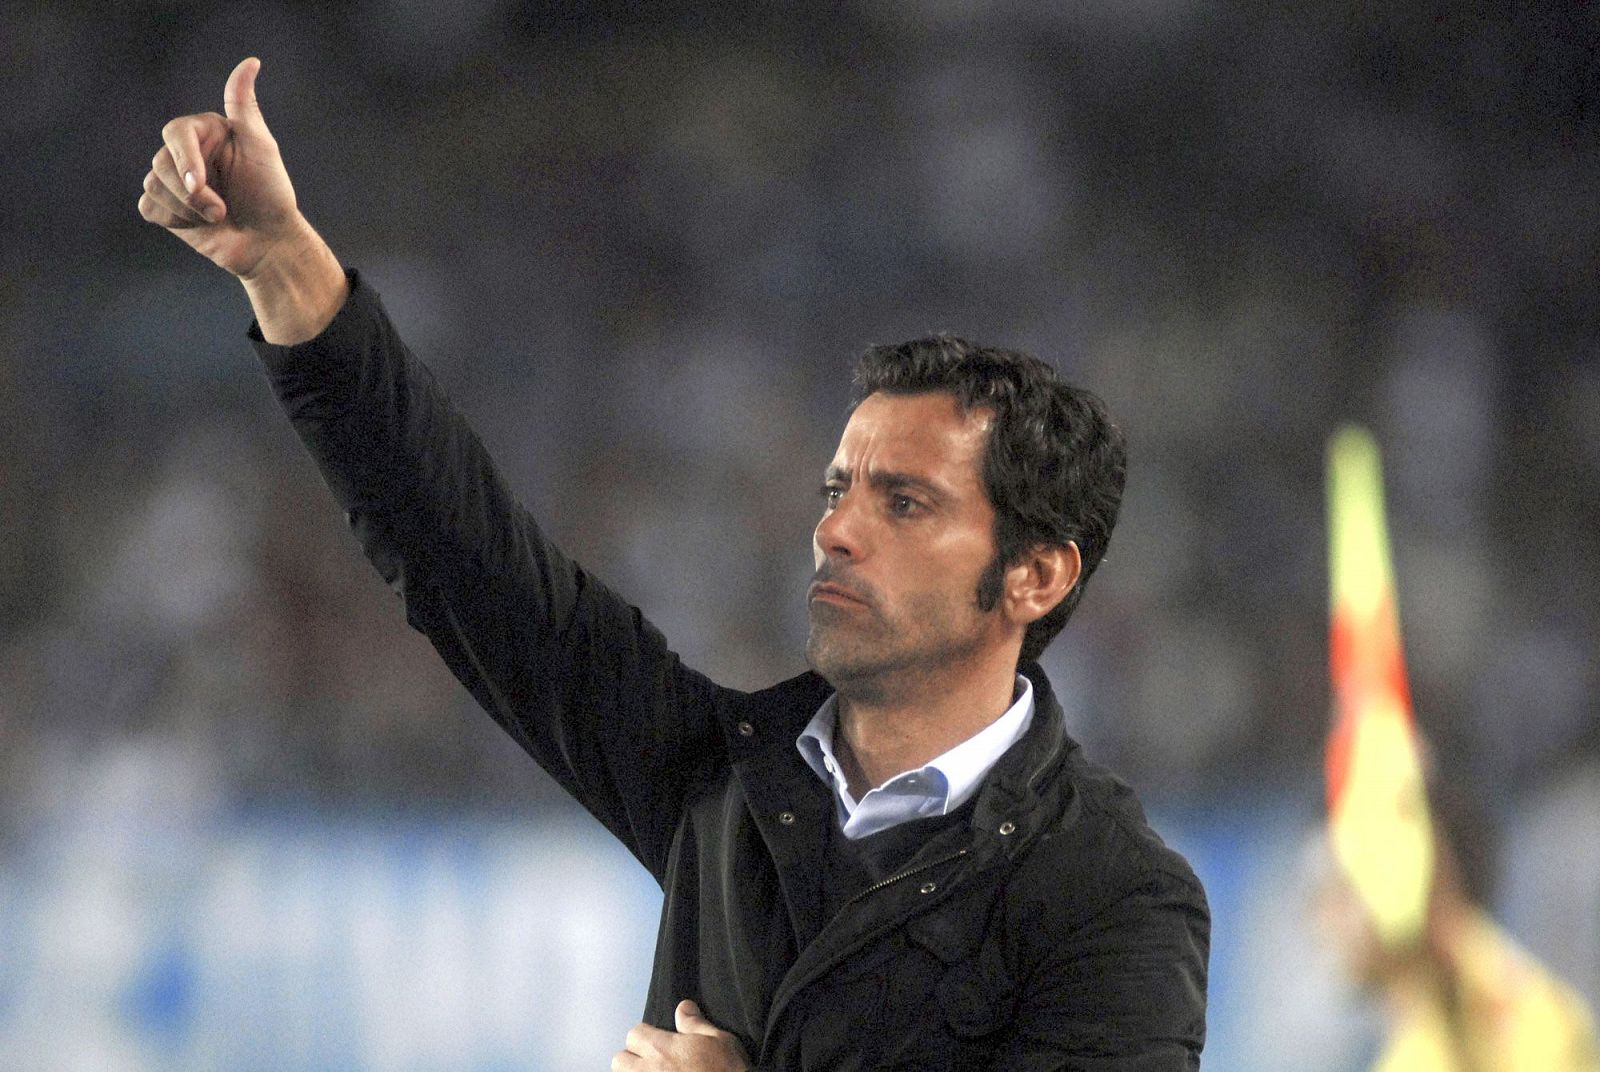 El entrenador del Atlético de Madrid Quique Sánchez Flores celebra el gol marcado por el delantero uruguayo Diego Forlán.